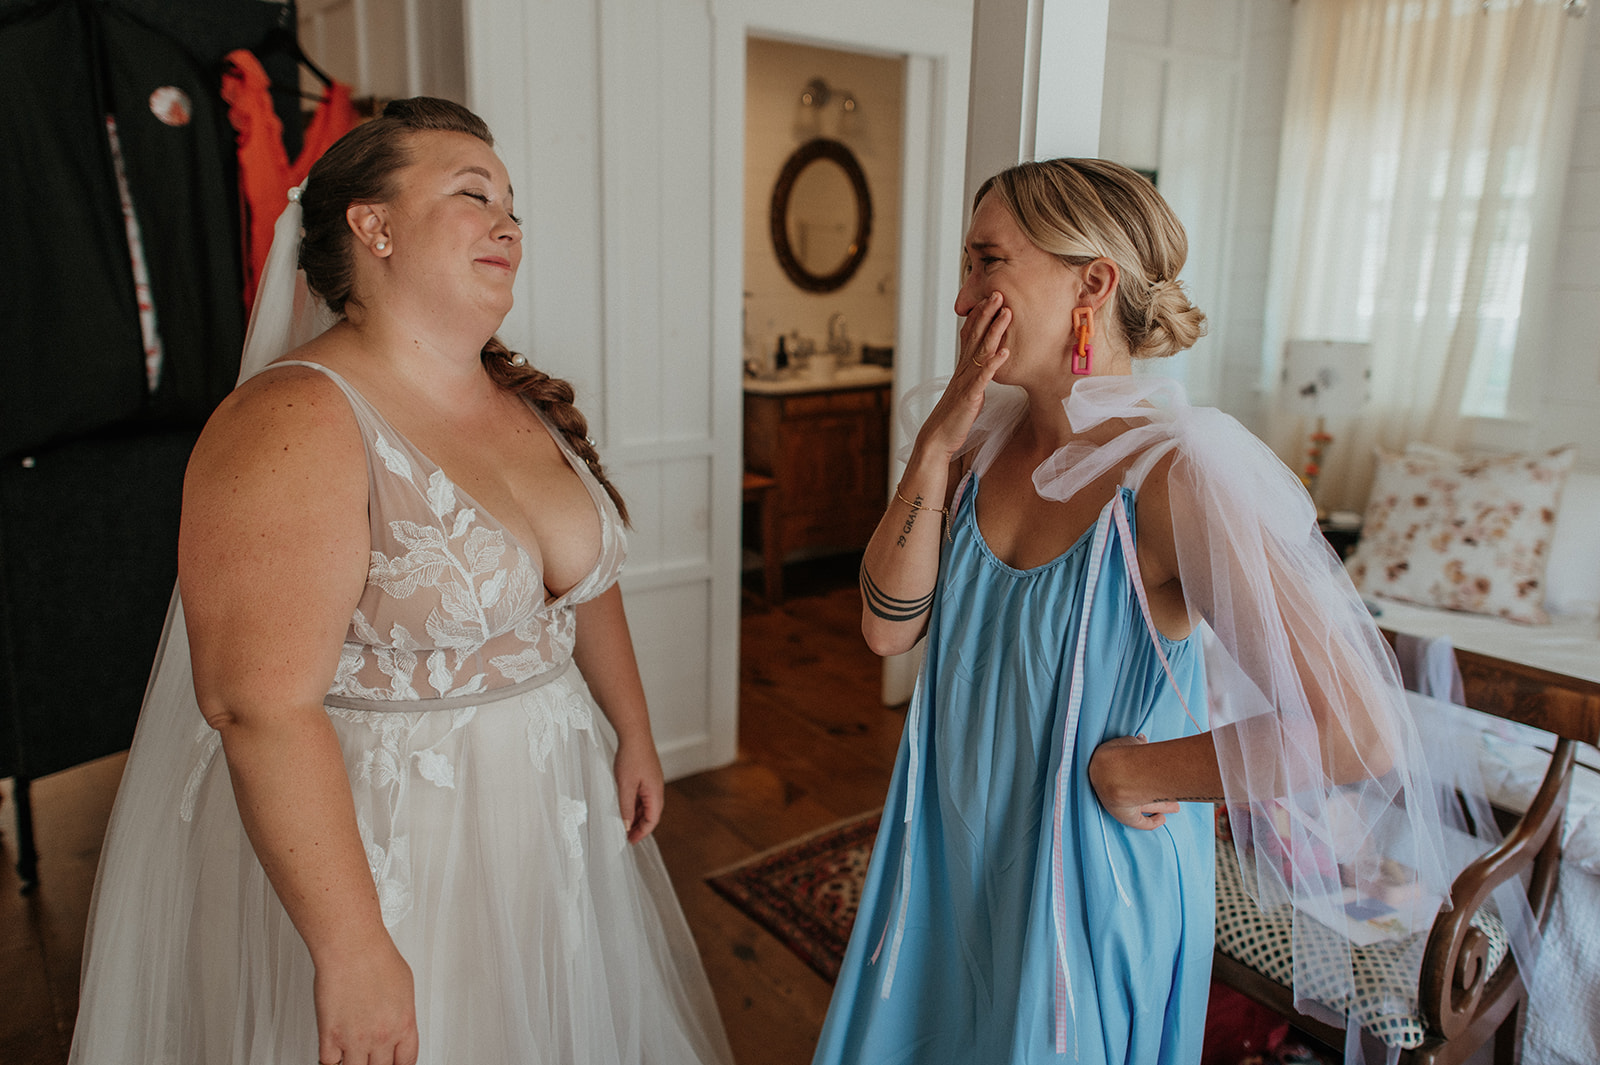 Bridesmaid cries with bride